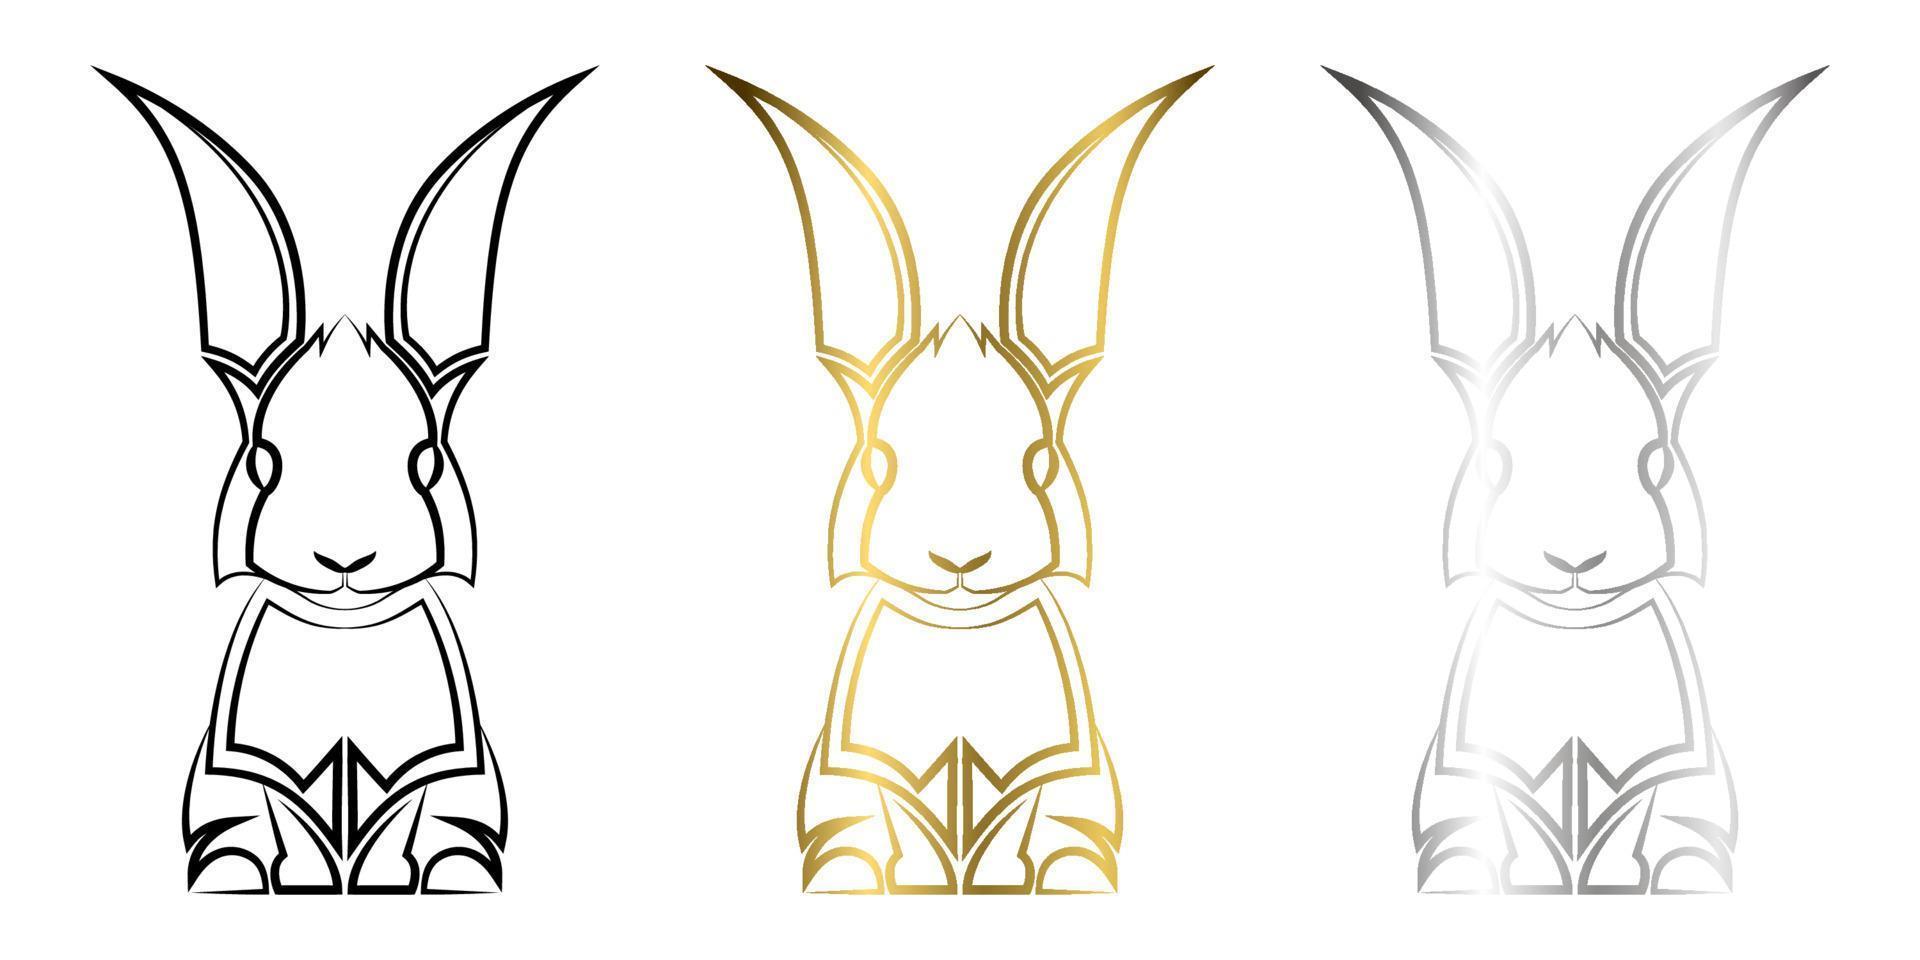 tre colori nero oro e argento linea arte del coniglio buon uso per simbolo mascotte icona avatar tatuaggio t shirt design logo o qualsiasi disegno tu voglia vettore